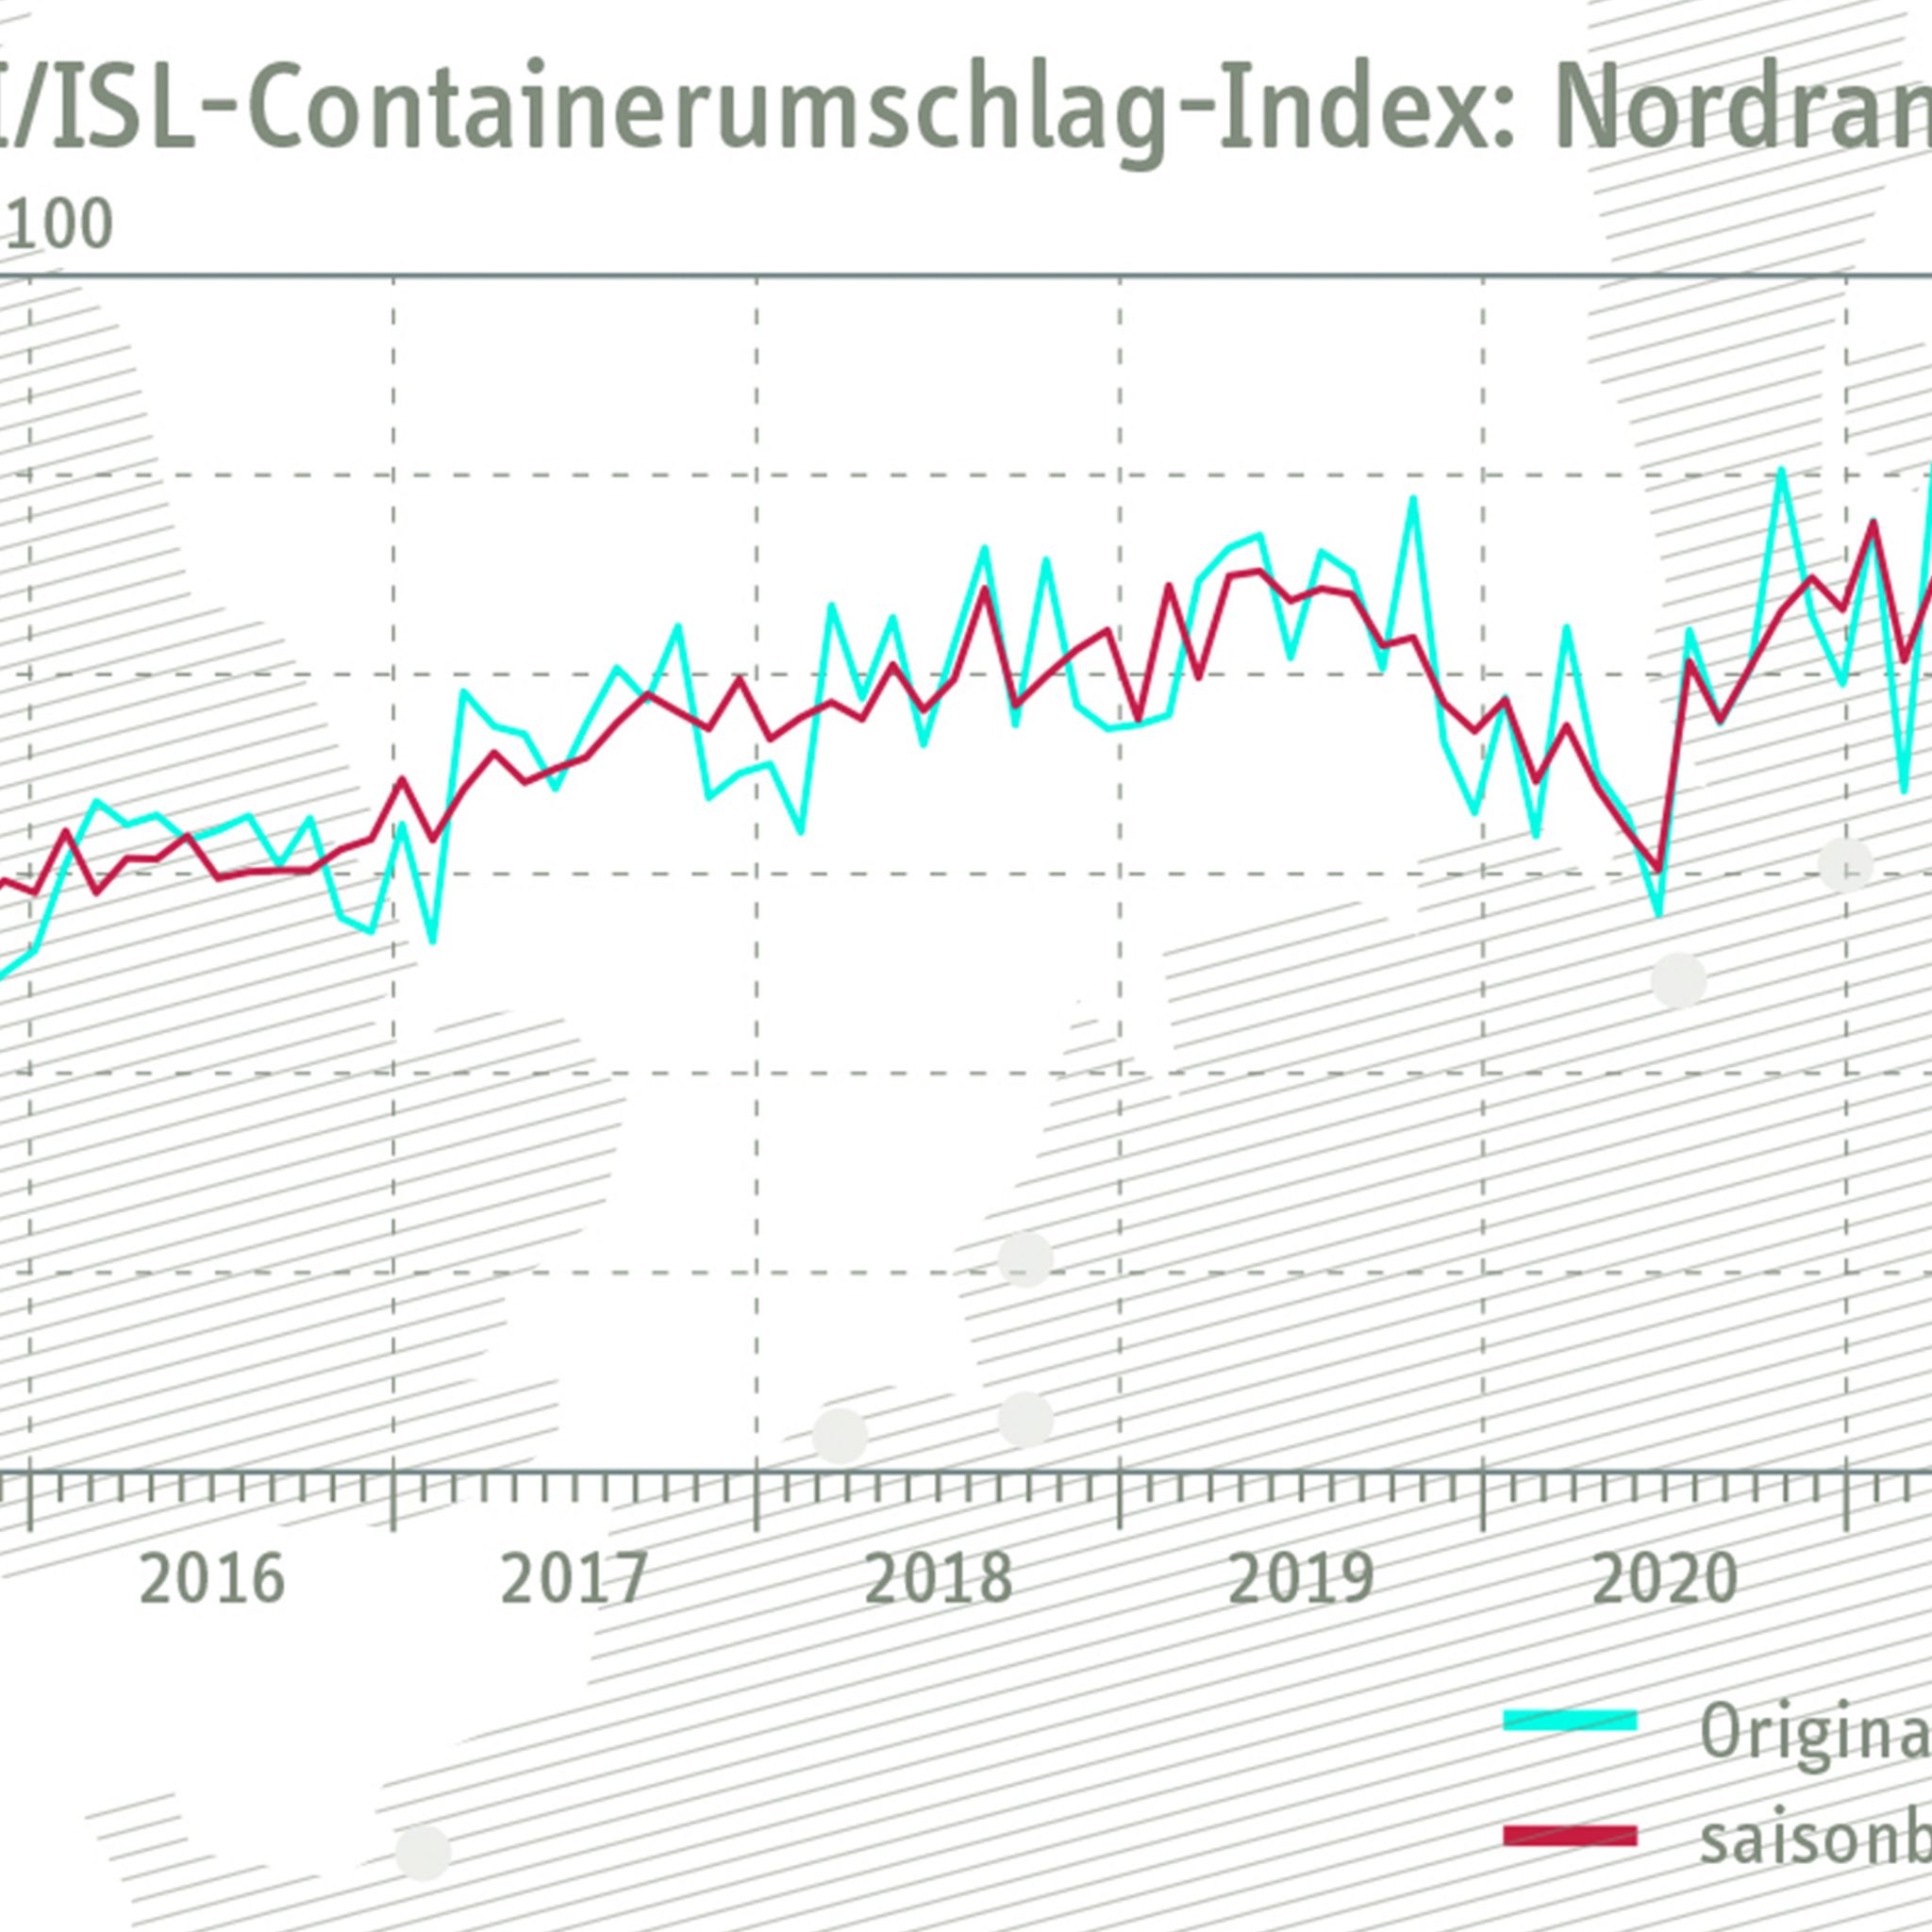 De North Range Index steeg fors, van 113,5 tot 119,3 punten. (Illustratie RWI / ISL)